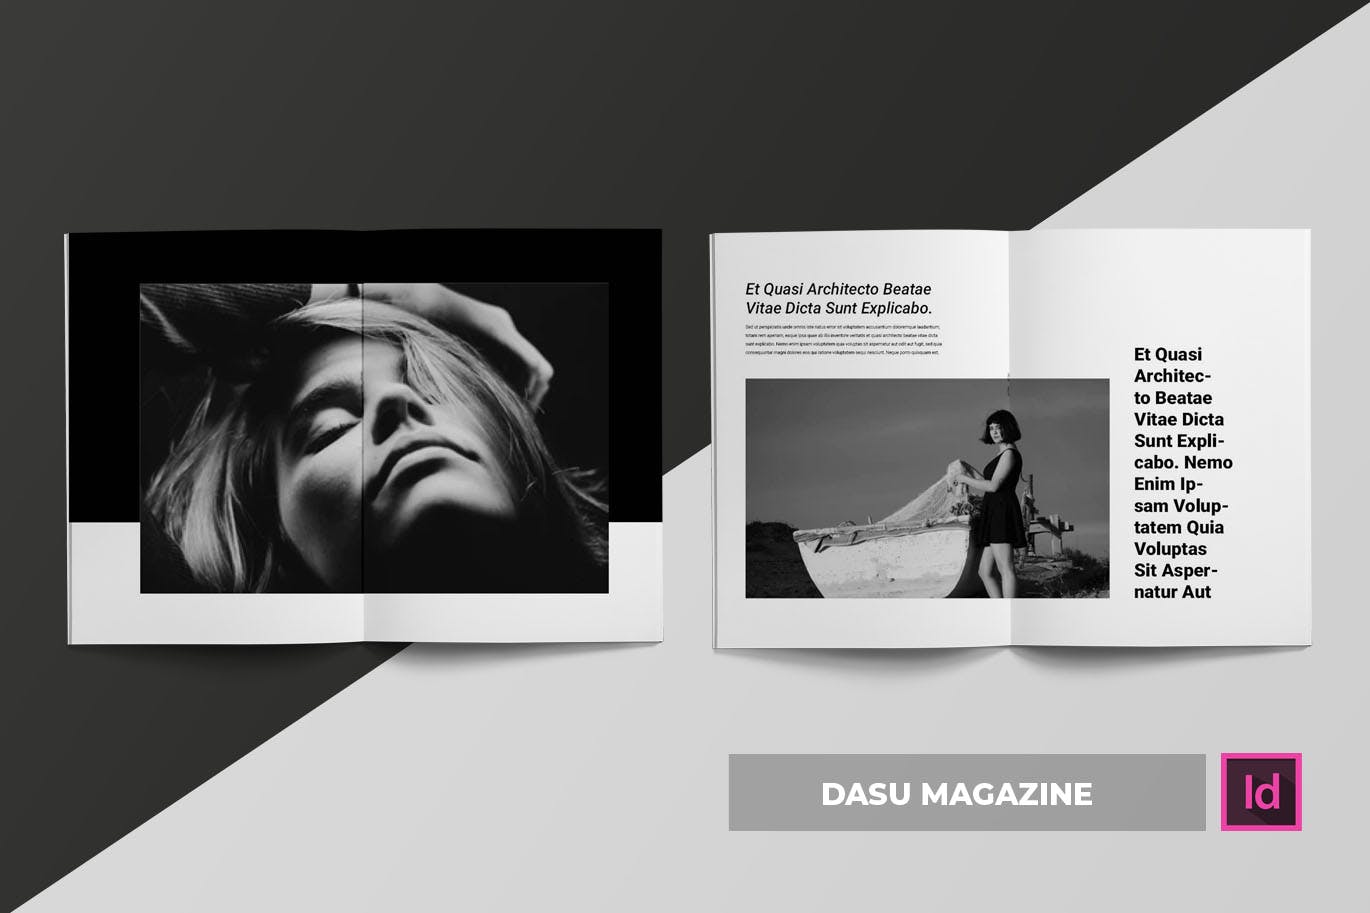 摄影艺术/时装设计主题蚂蚁素材精选杂志排版设计模板 Dasu | Magazine Template插图(1)